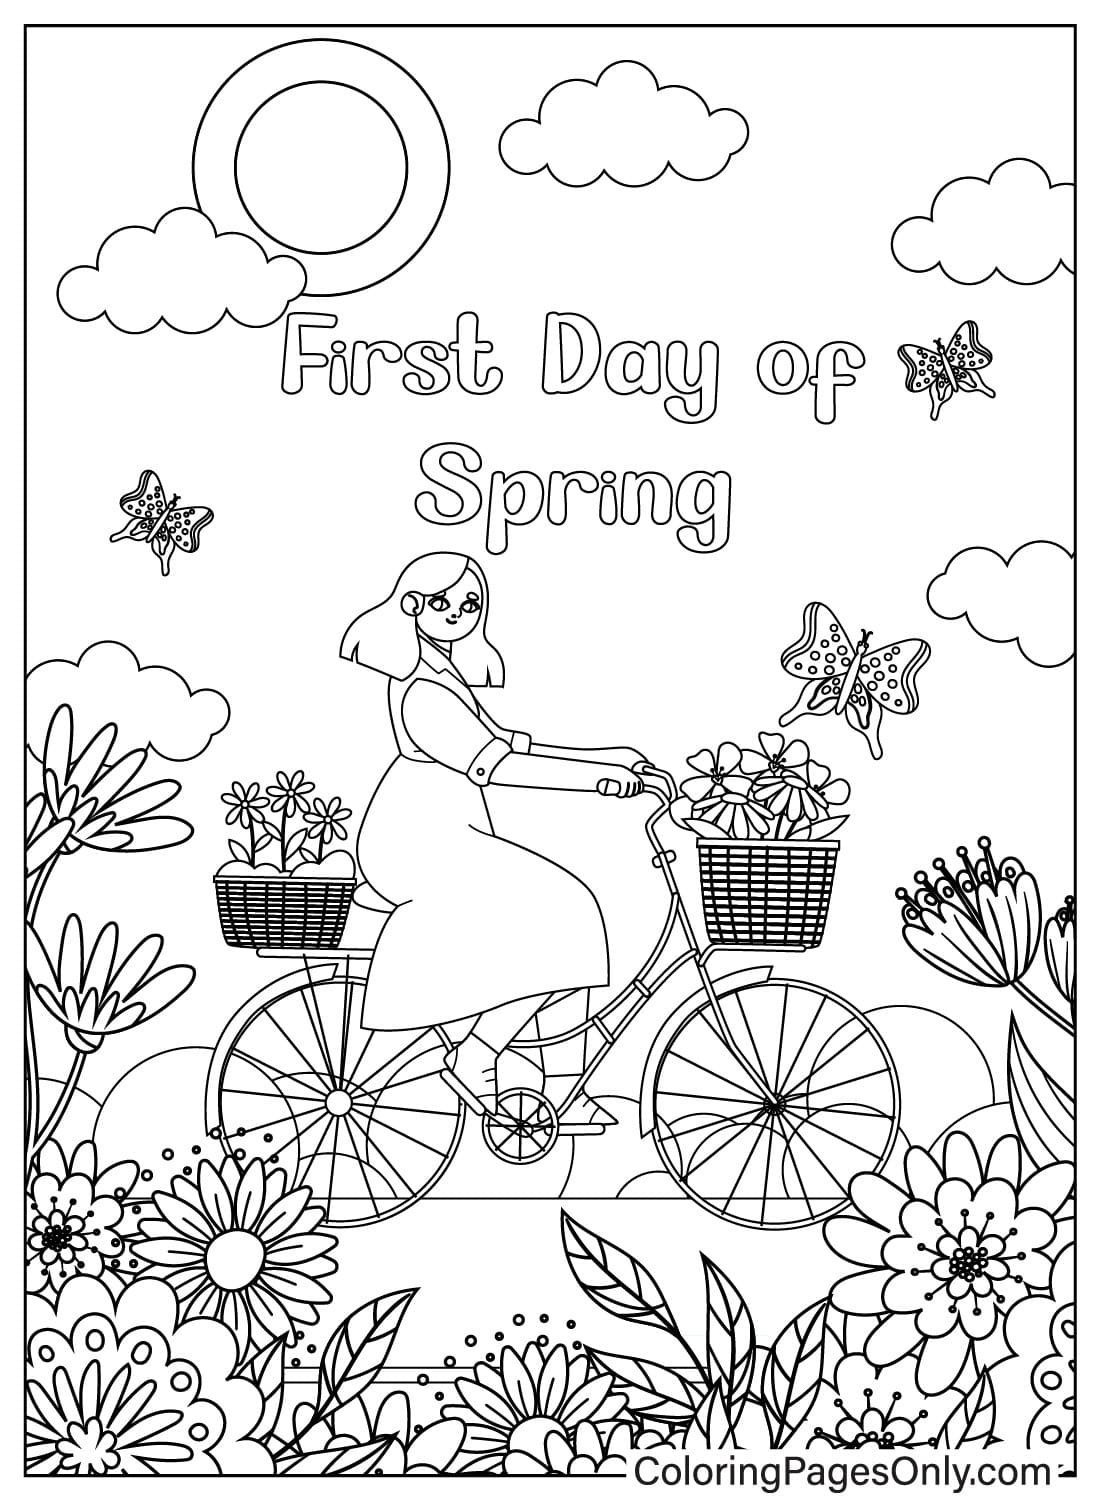 Página para colorear del primer día de primavera para adultos de Primer día de primavera